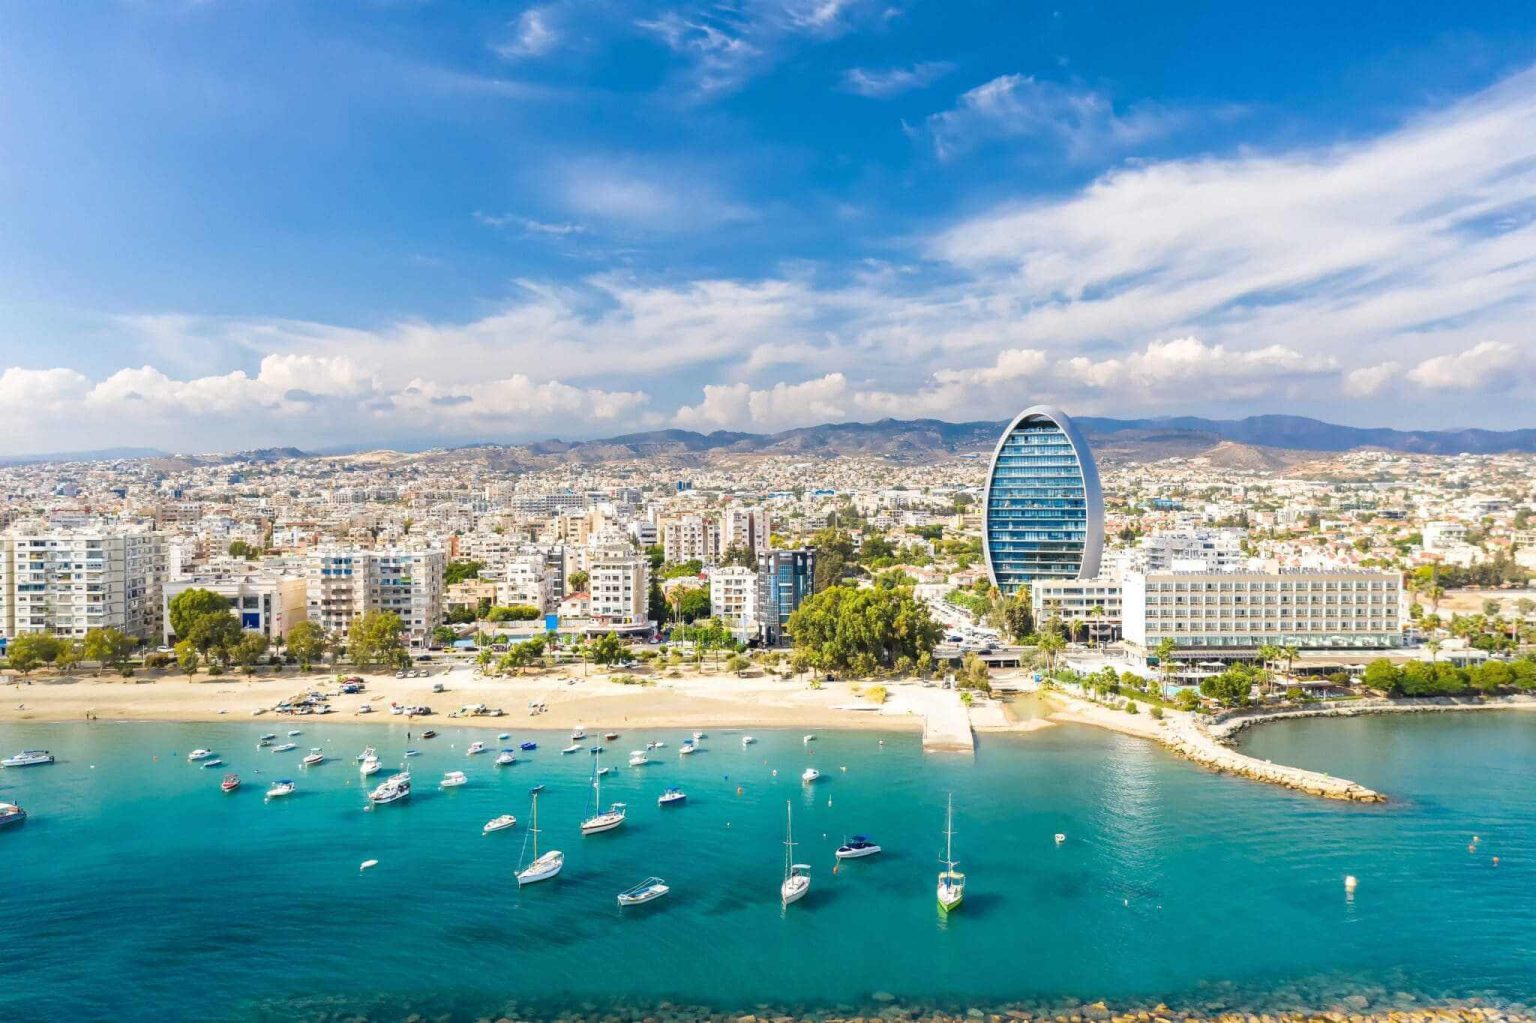 Quốc đảo Síp xinh đẹp và hiện đại